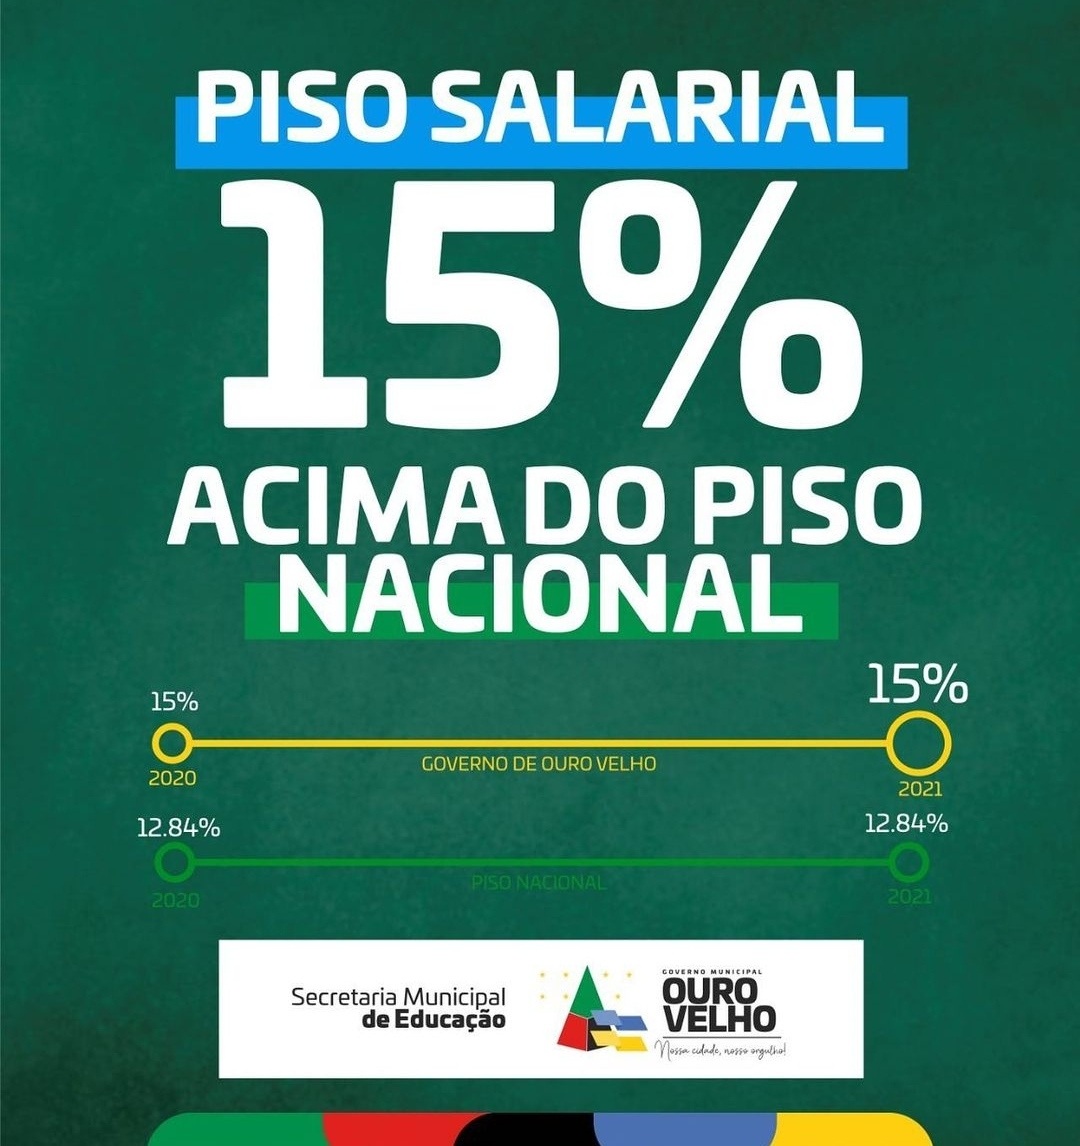 IMG_20210203_080935 Prefeitura de Ouro Velho anuncia pagamento acima do piso para professores da rede municipal